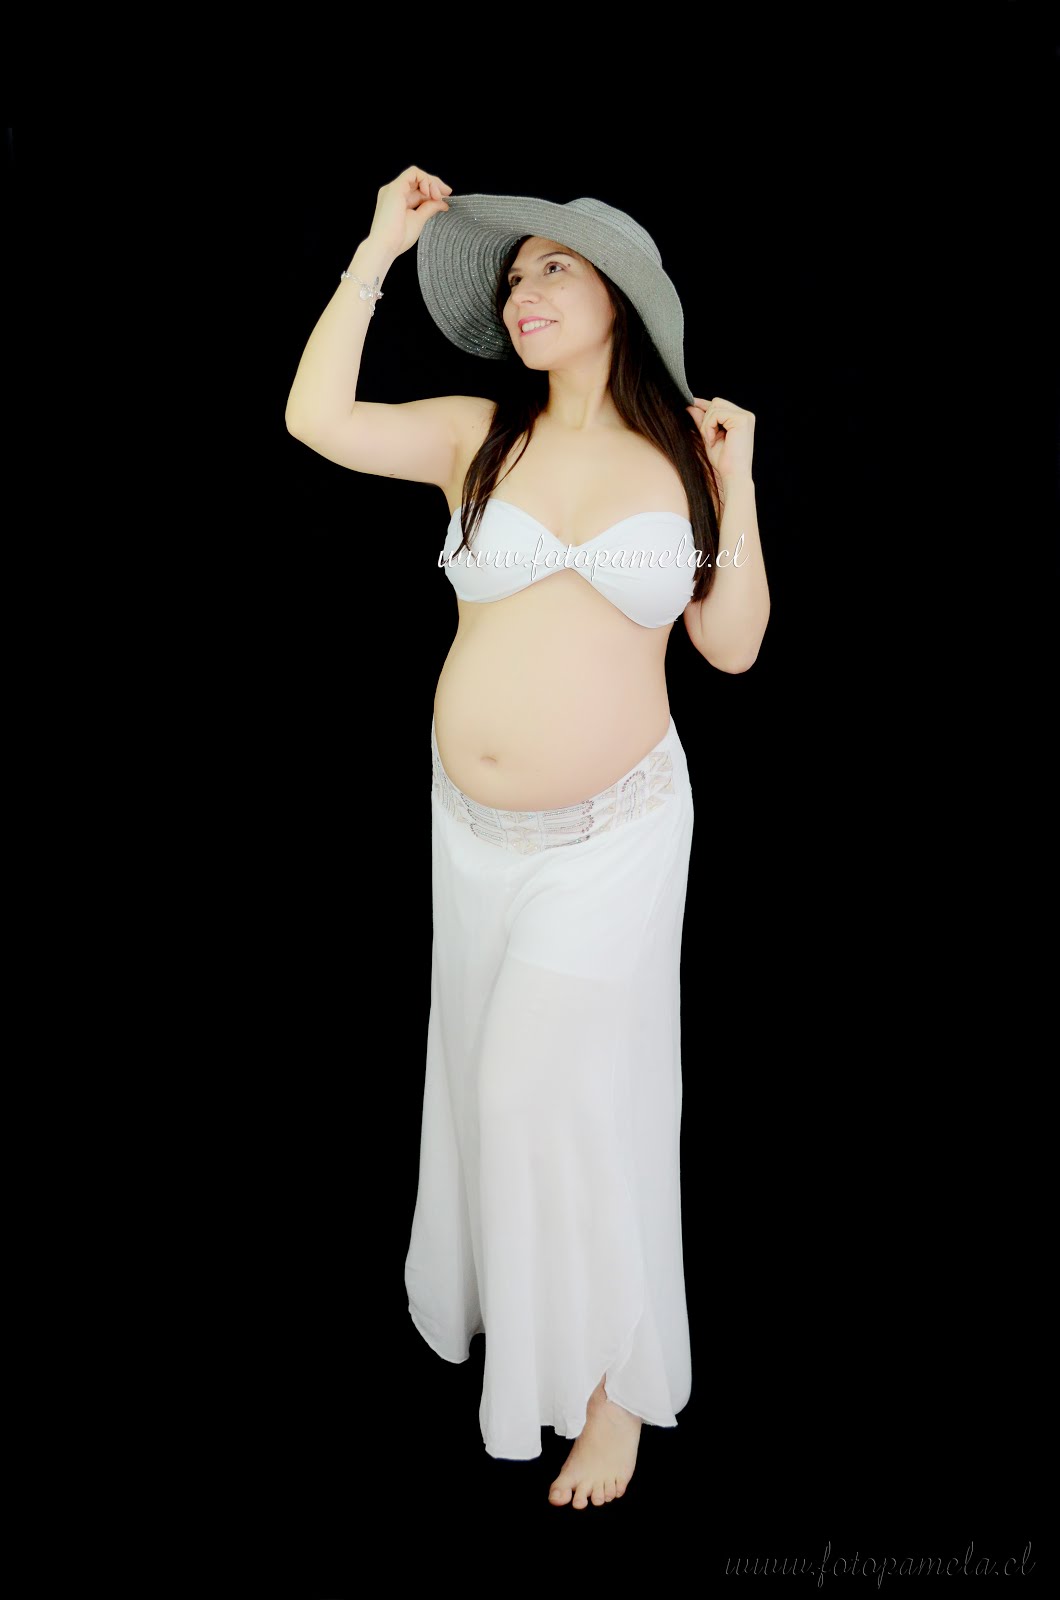 mujer embarazada foto profesional en santiago